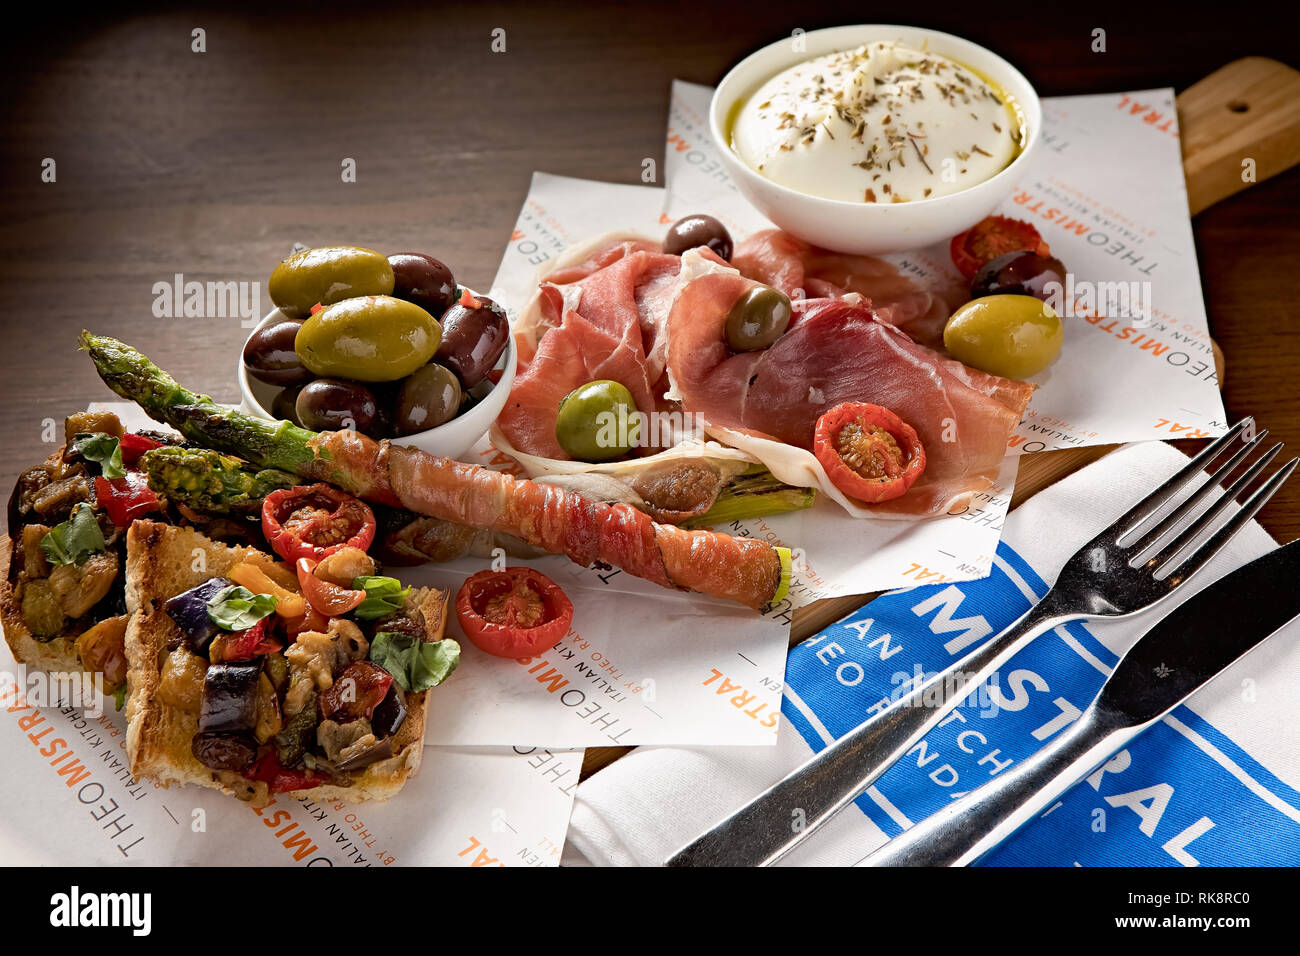 Sélection fraîche d'antipasti italiens, tels que des olives, du pain grillé aux légumes, du fromage crémeux et du jambon fumé Banque D'Images